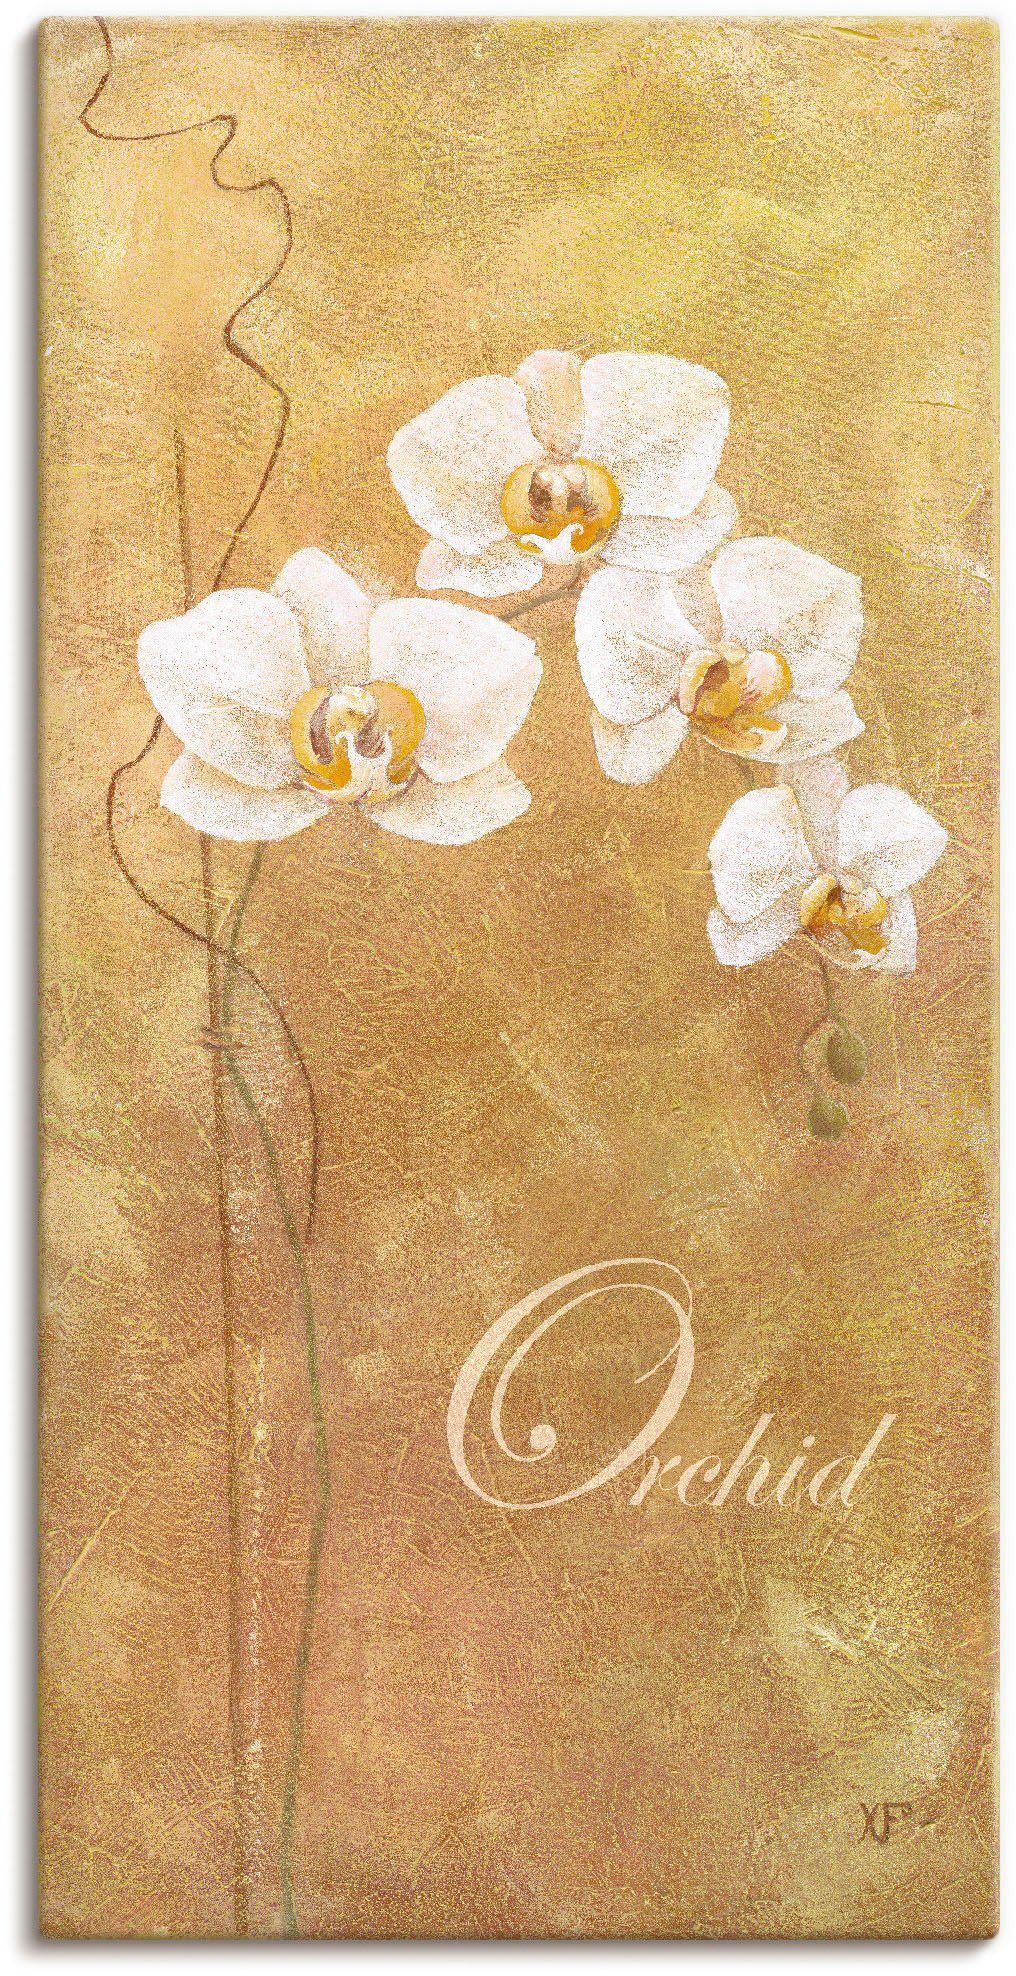 Artland Artprint Filigraan verwerkte orchidee in vele afmetingen & productsoorten - artprint van aluminium / artprint voor buiten, artprint op linnen, poster, muursticker / wandfol